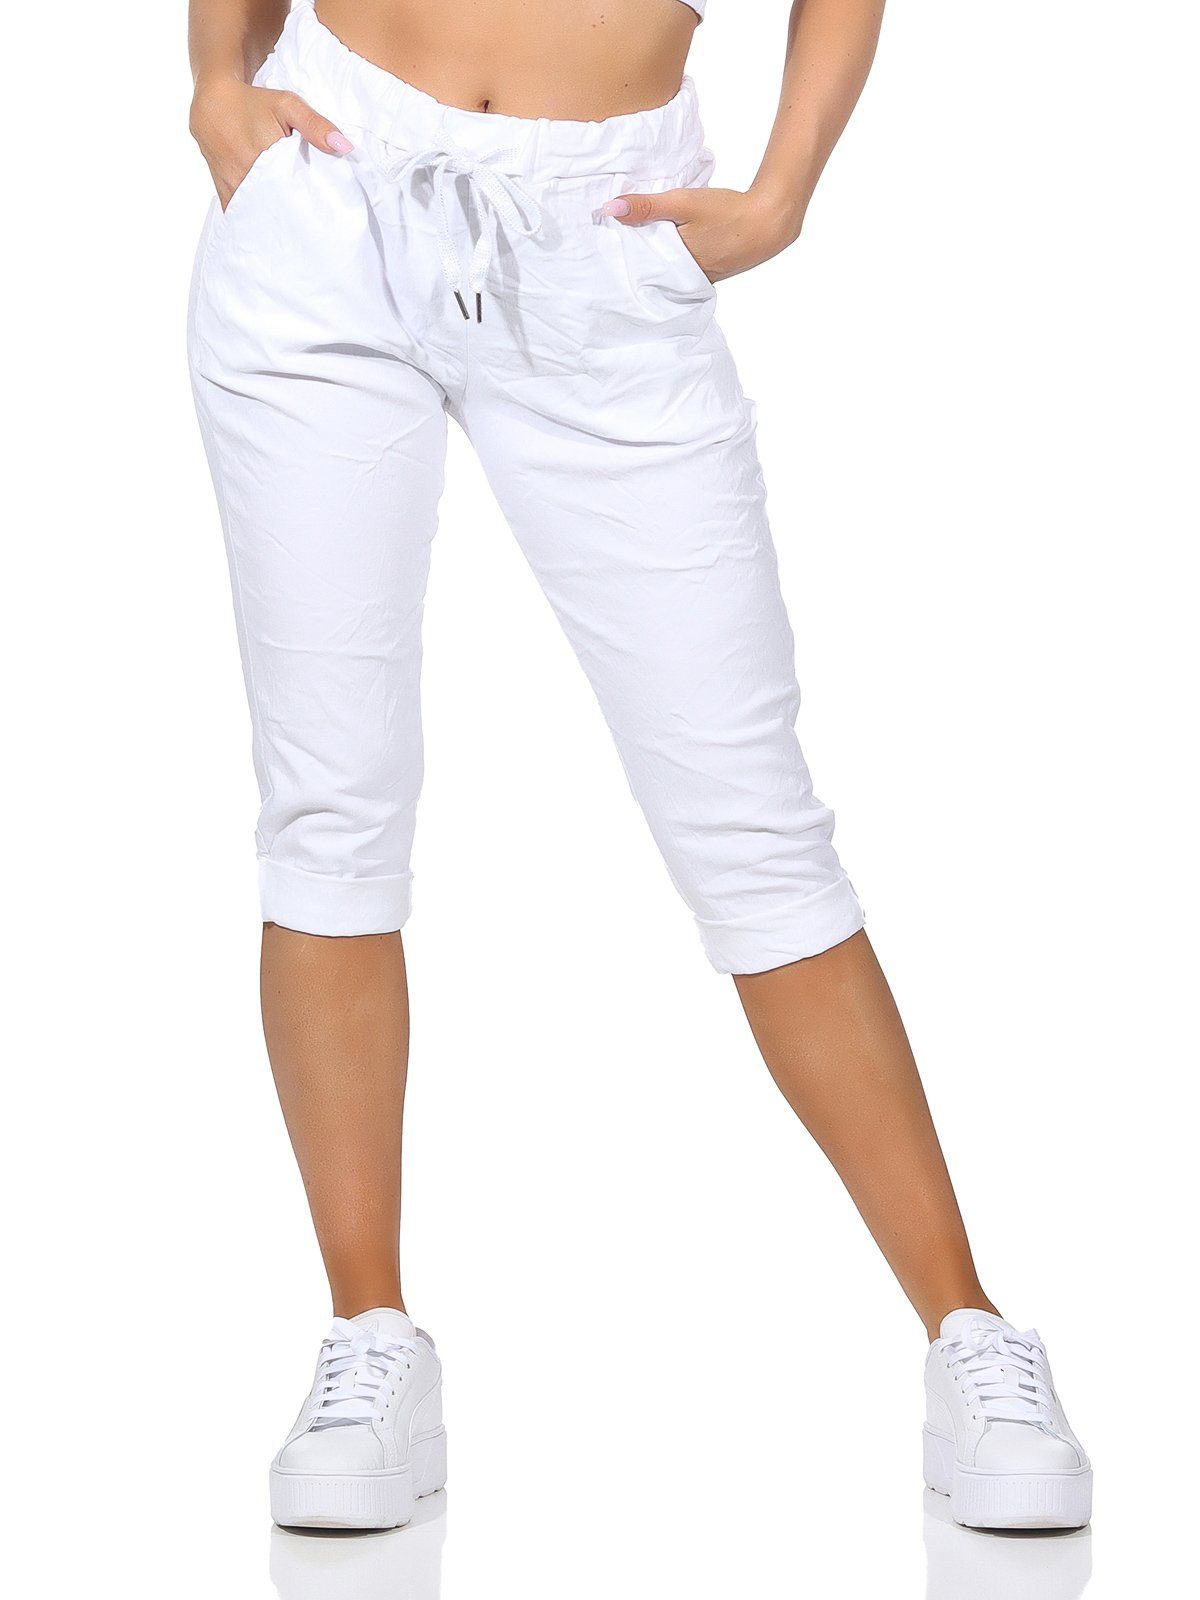 Aurela Damenmode in Kordelzug, Damen sommerlichen Sommerhose Capri 36-44 Weiß Jeans Farben, und 7/8-Hose Taschen Hose Kurze Bermuda